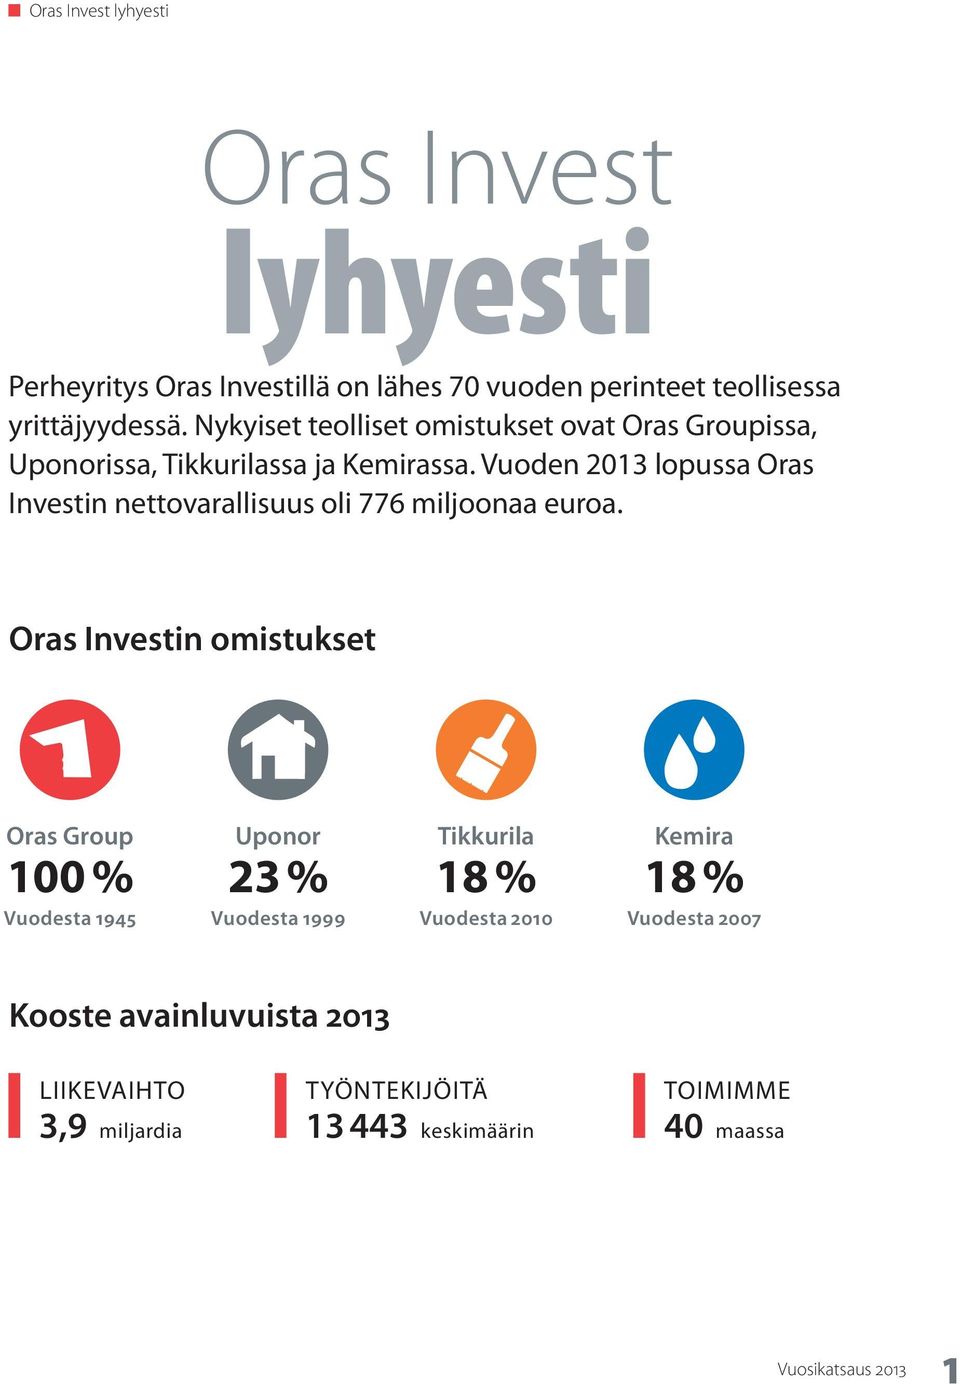 Vuoden 2013 lopussa Oras Investin nettovarallisuus oli 776 miljoonaa euroa.